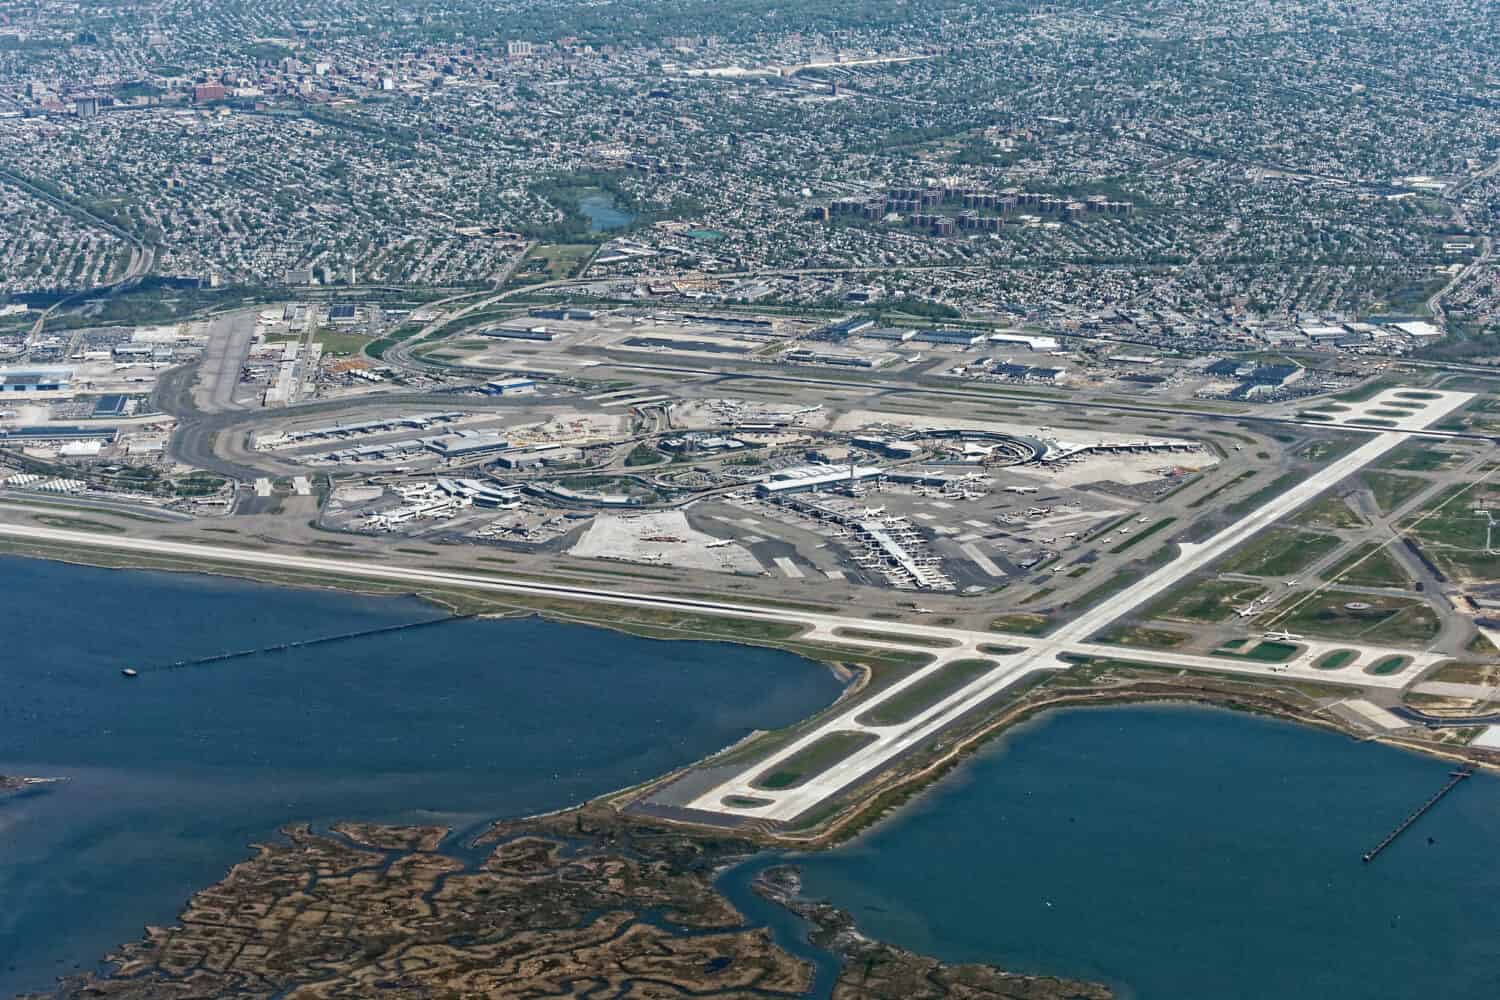 Vista aerea dell'aeroporto JFK di New York